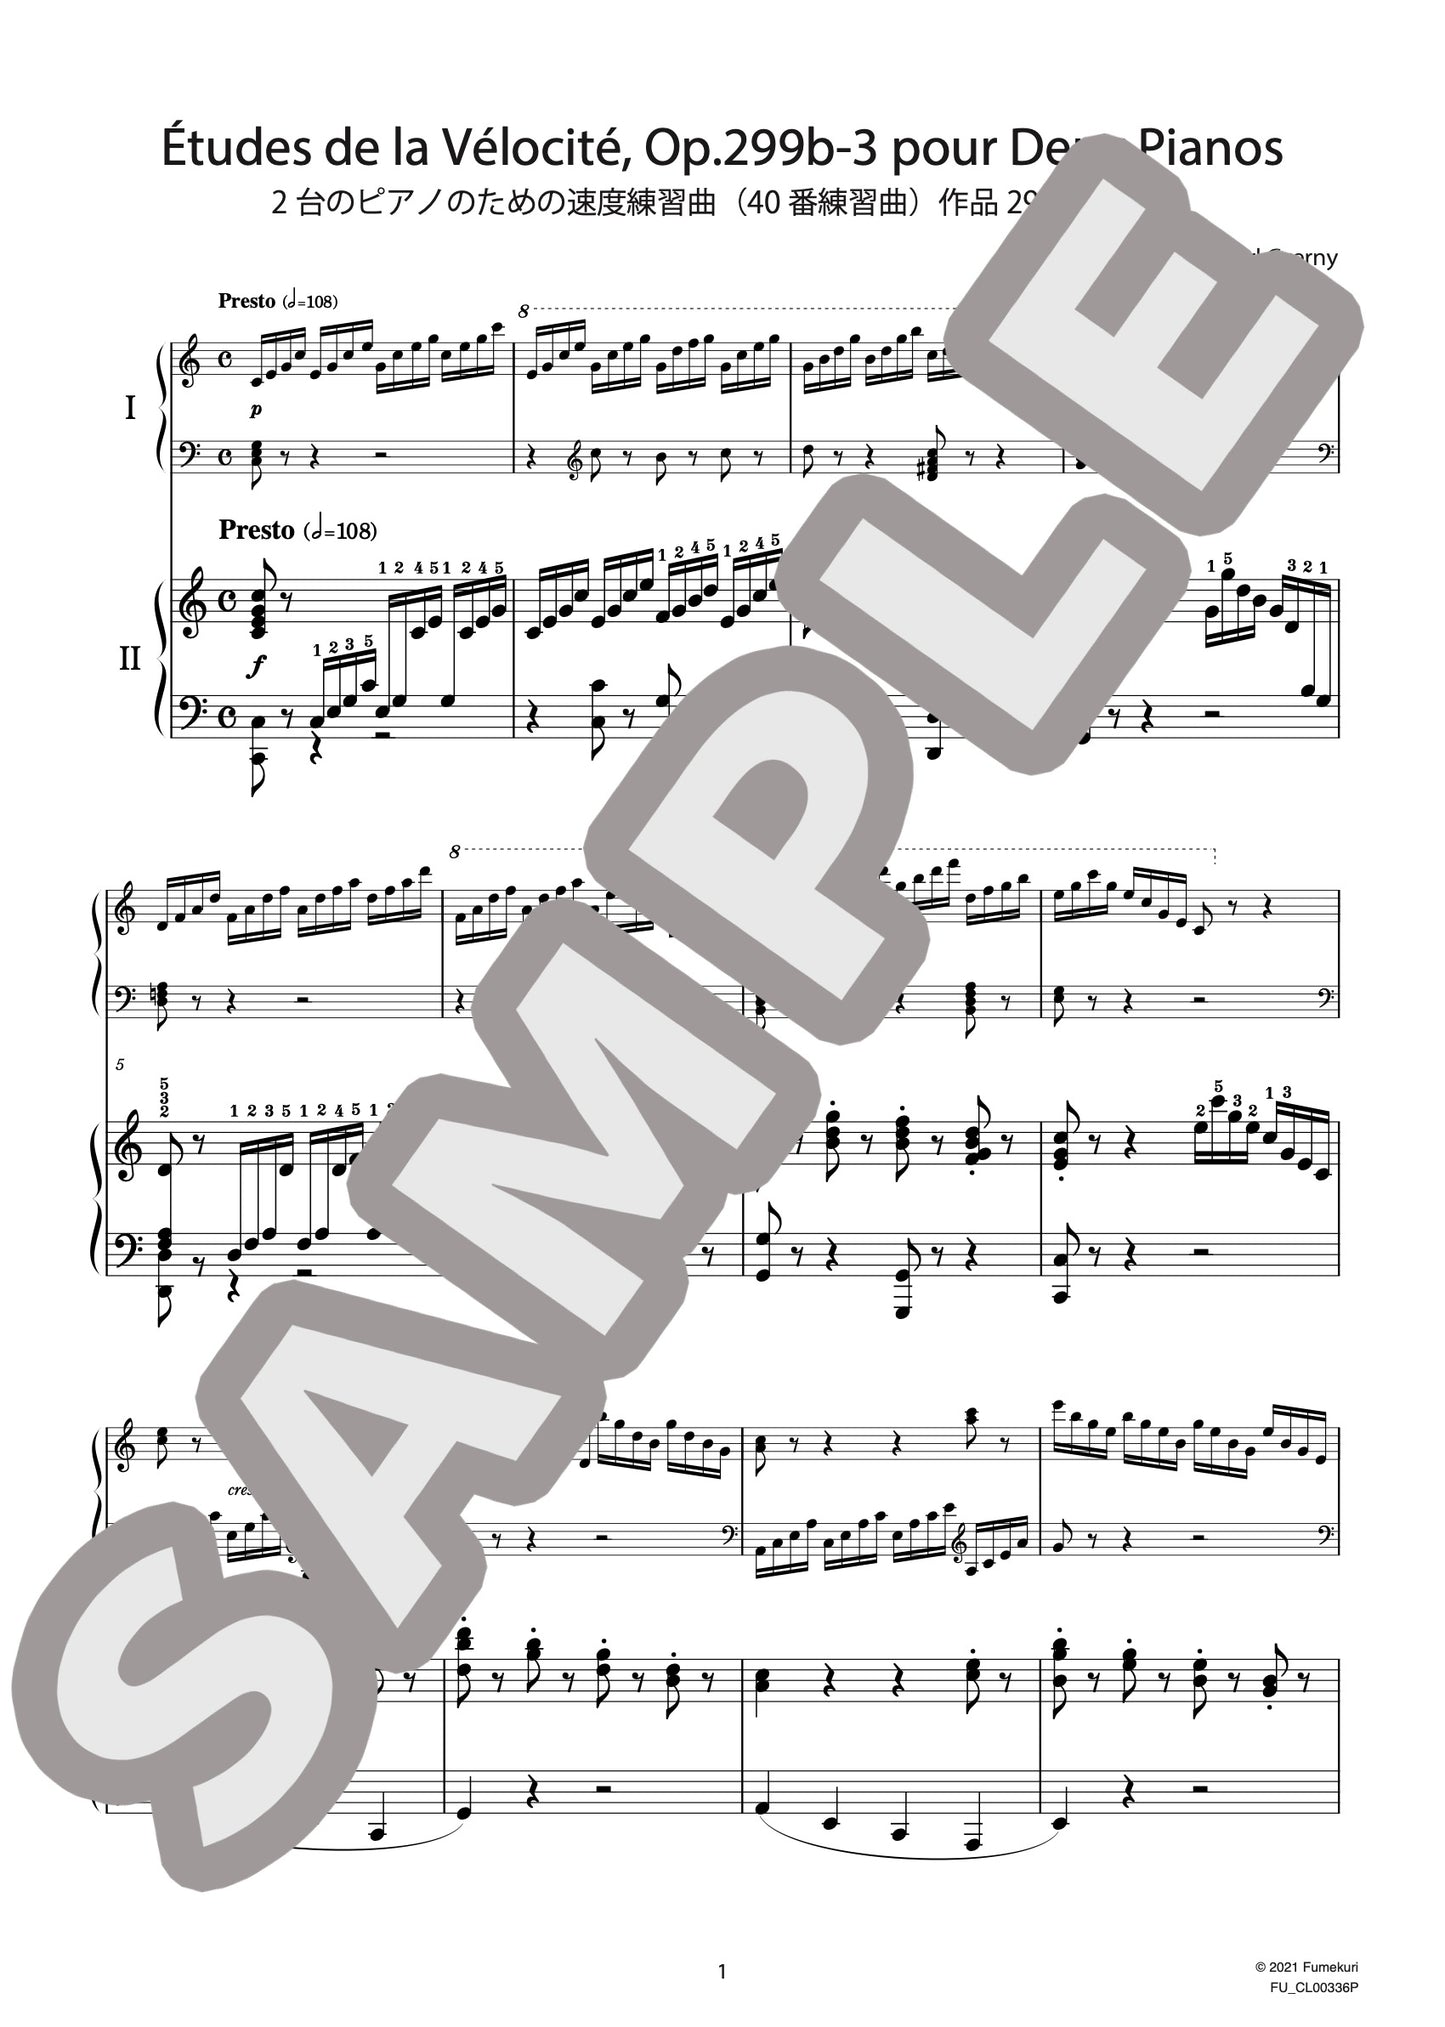 2台のピアノのための速度練習曲（40番練習曲）作品299b 第3番（CZERNY) / クラシック・オリジナル楽曲【中上級】